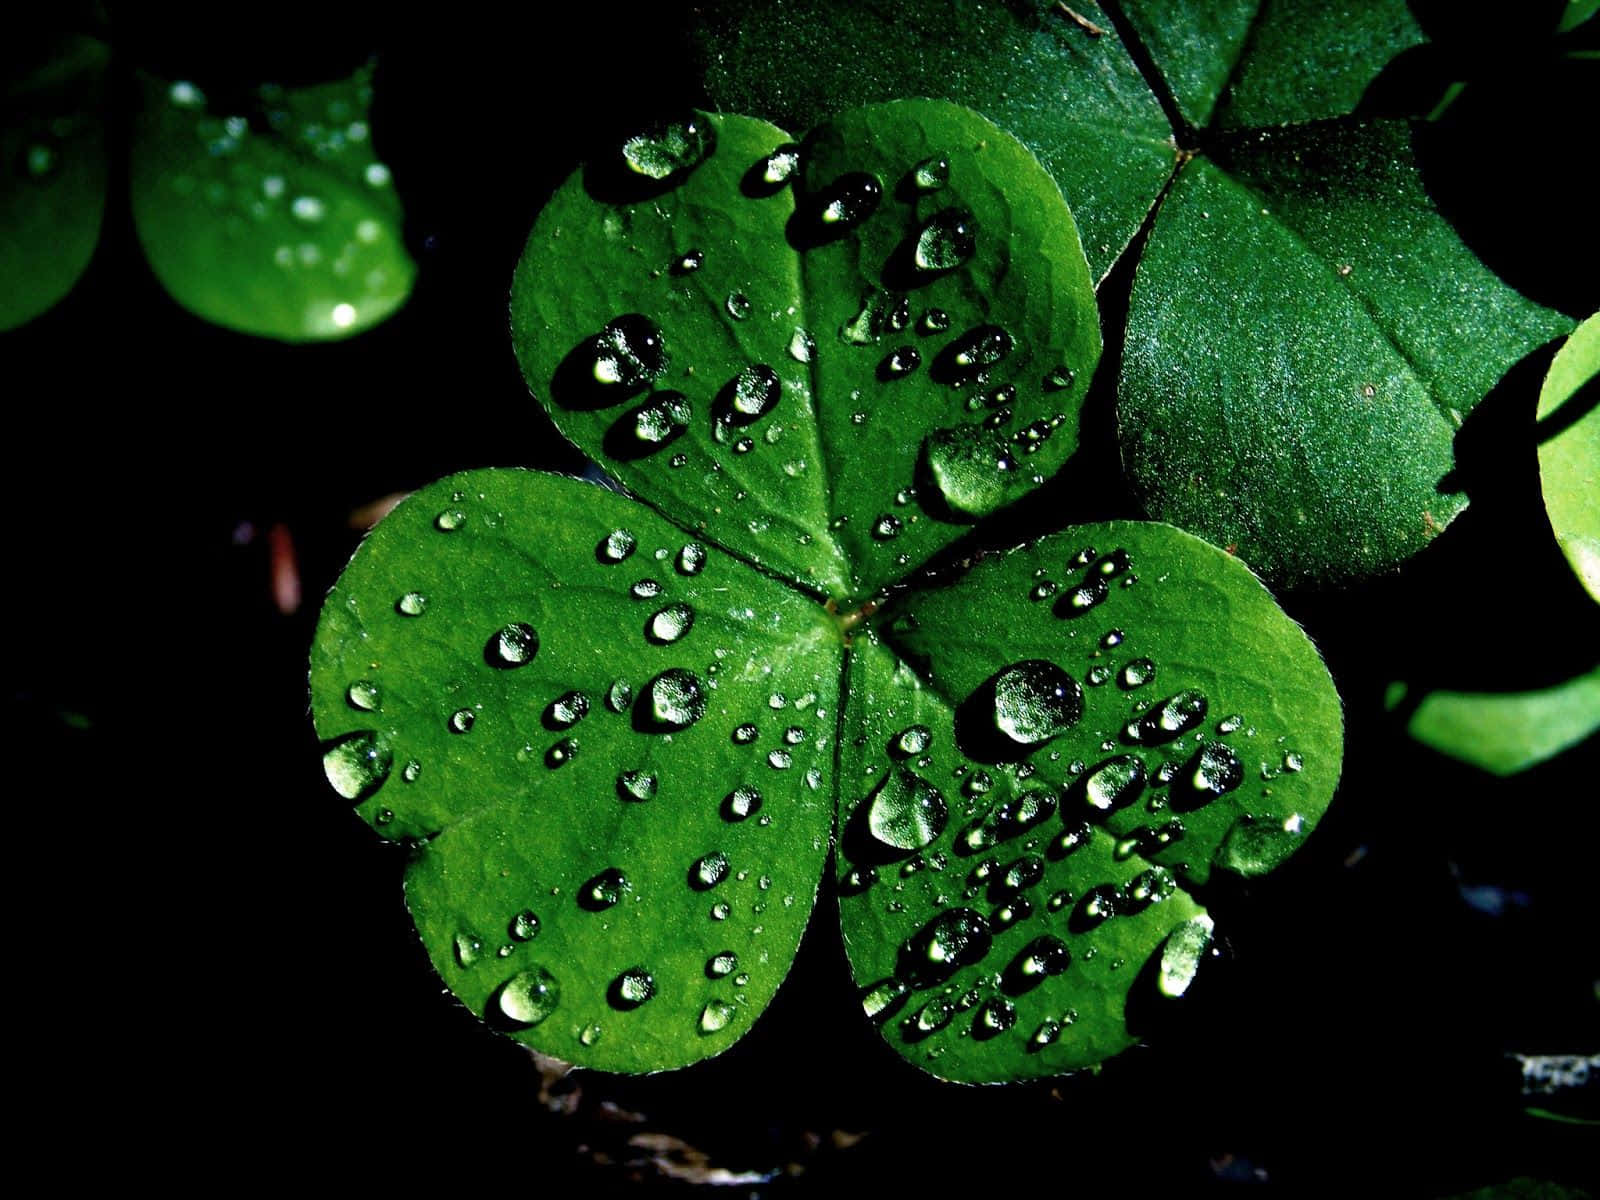 Зеленый цвет национальный. Четырёхлистный Клевер символ Ирландии. Северная Ирландия - Клевер (Shamrock). Символ Северной Ирландии трилистник. Трехлистный Клевер символ Ирландии.